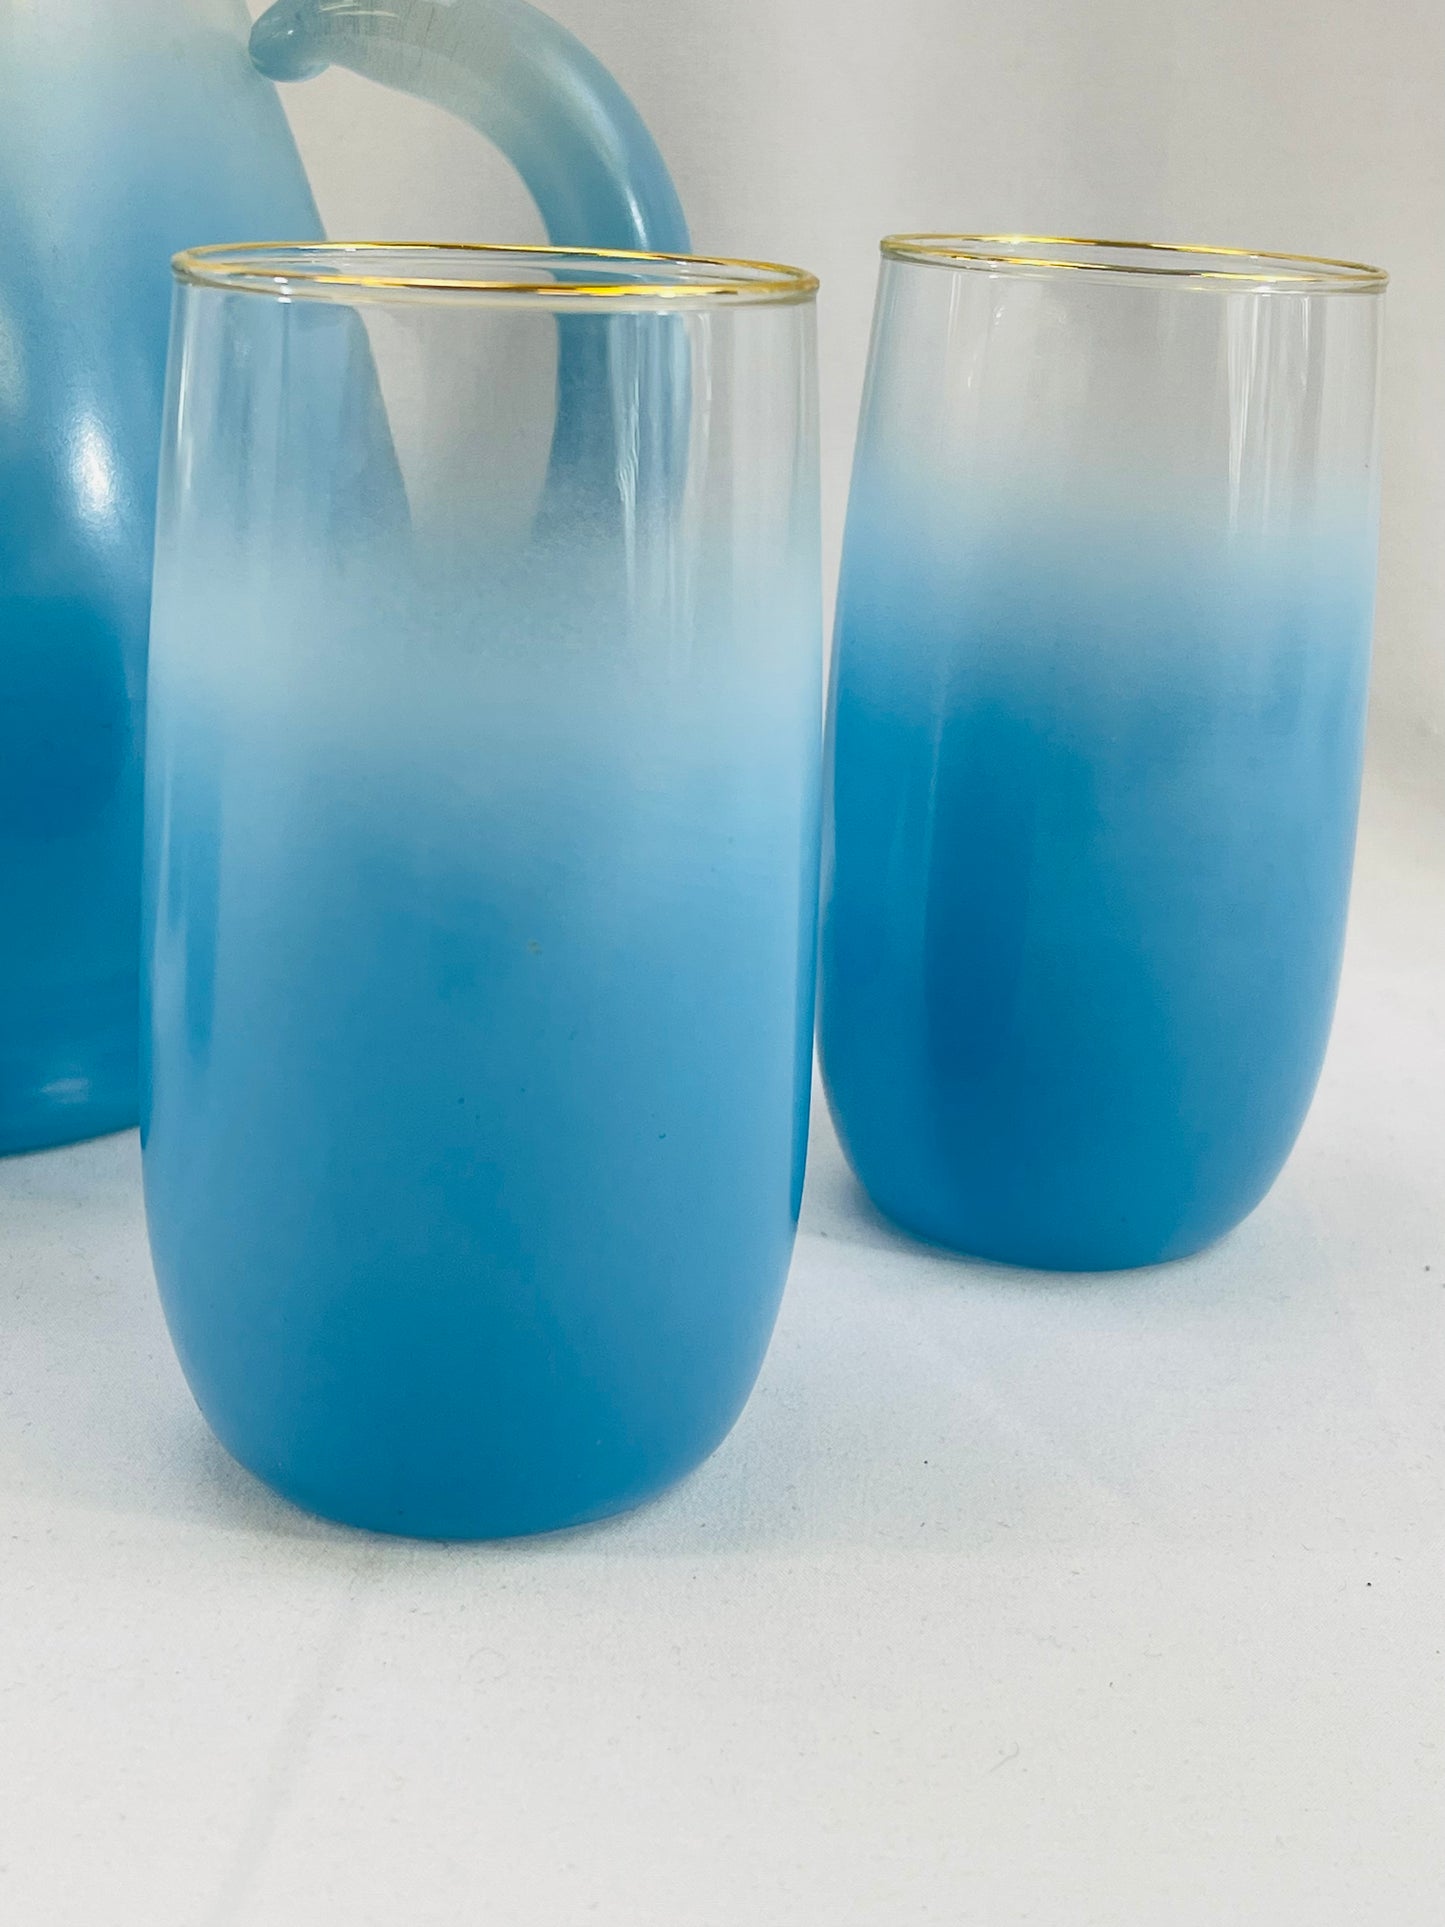 Blue Blendo Pitcher & 4 Glasses